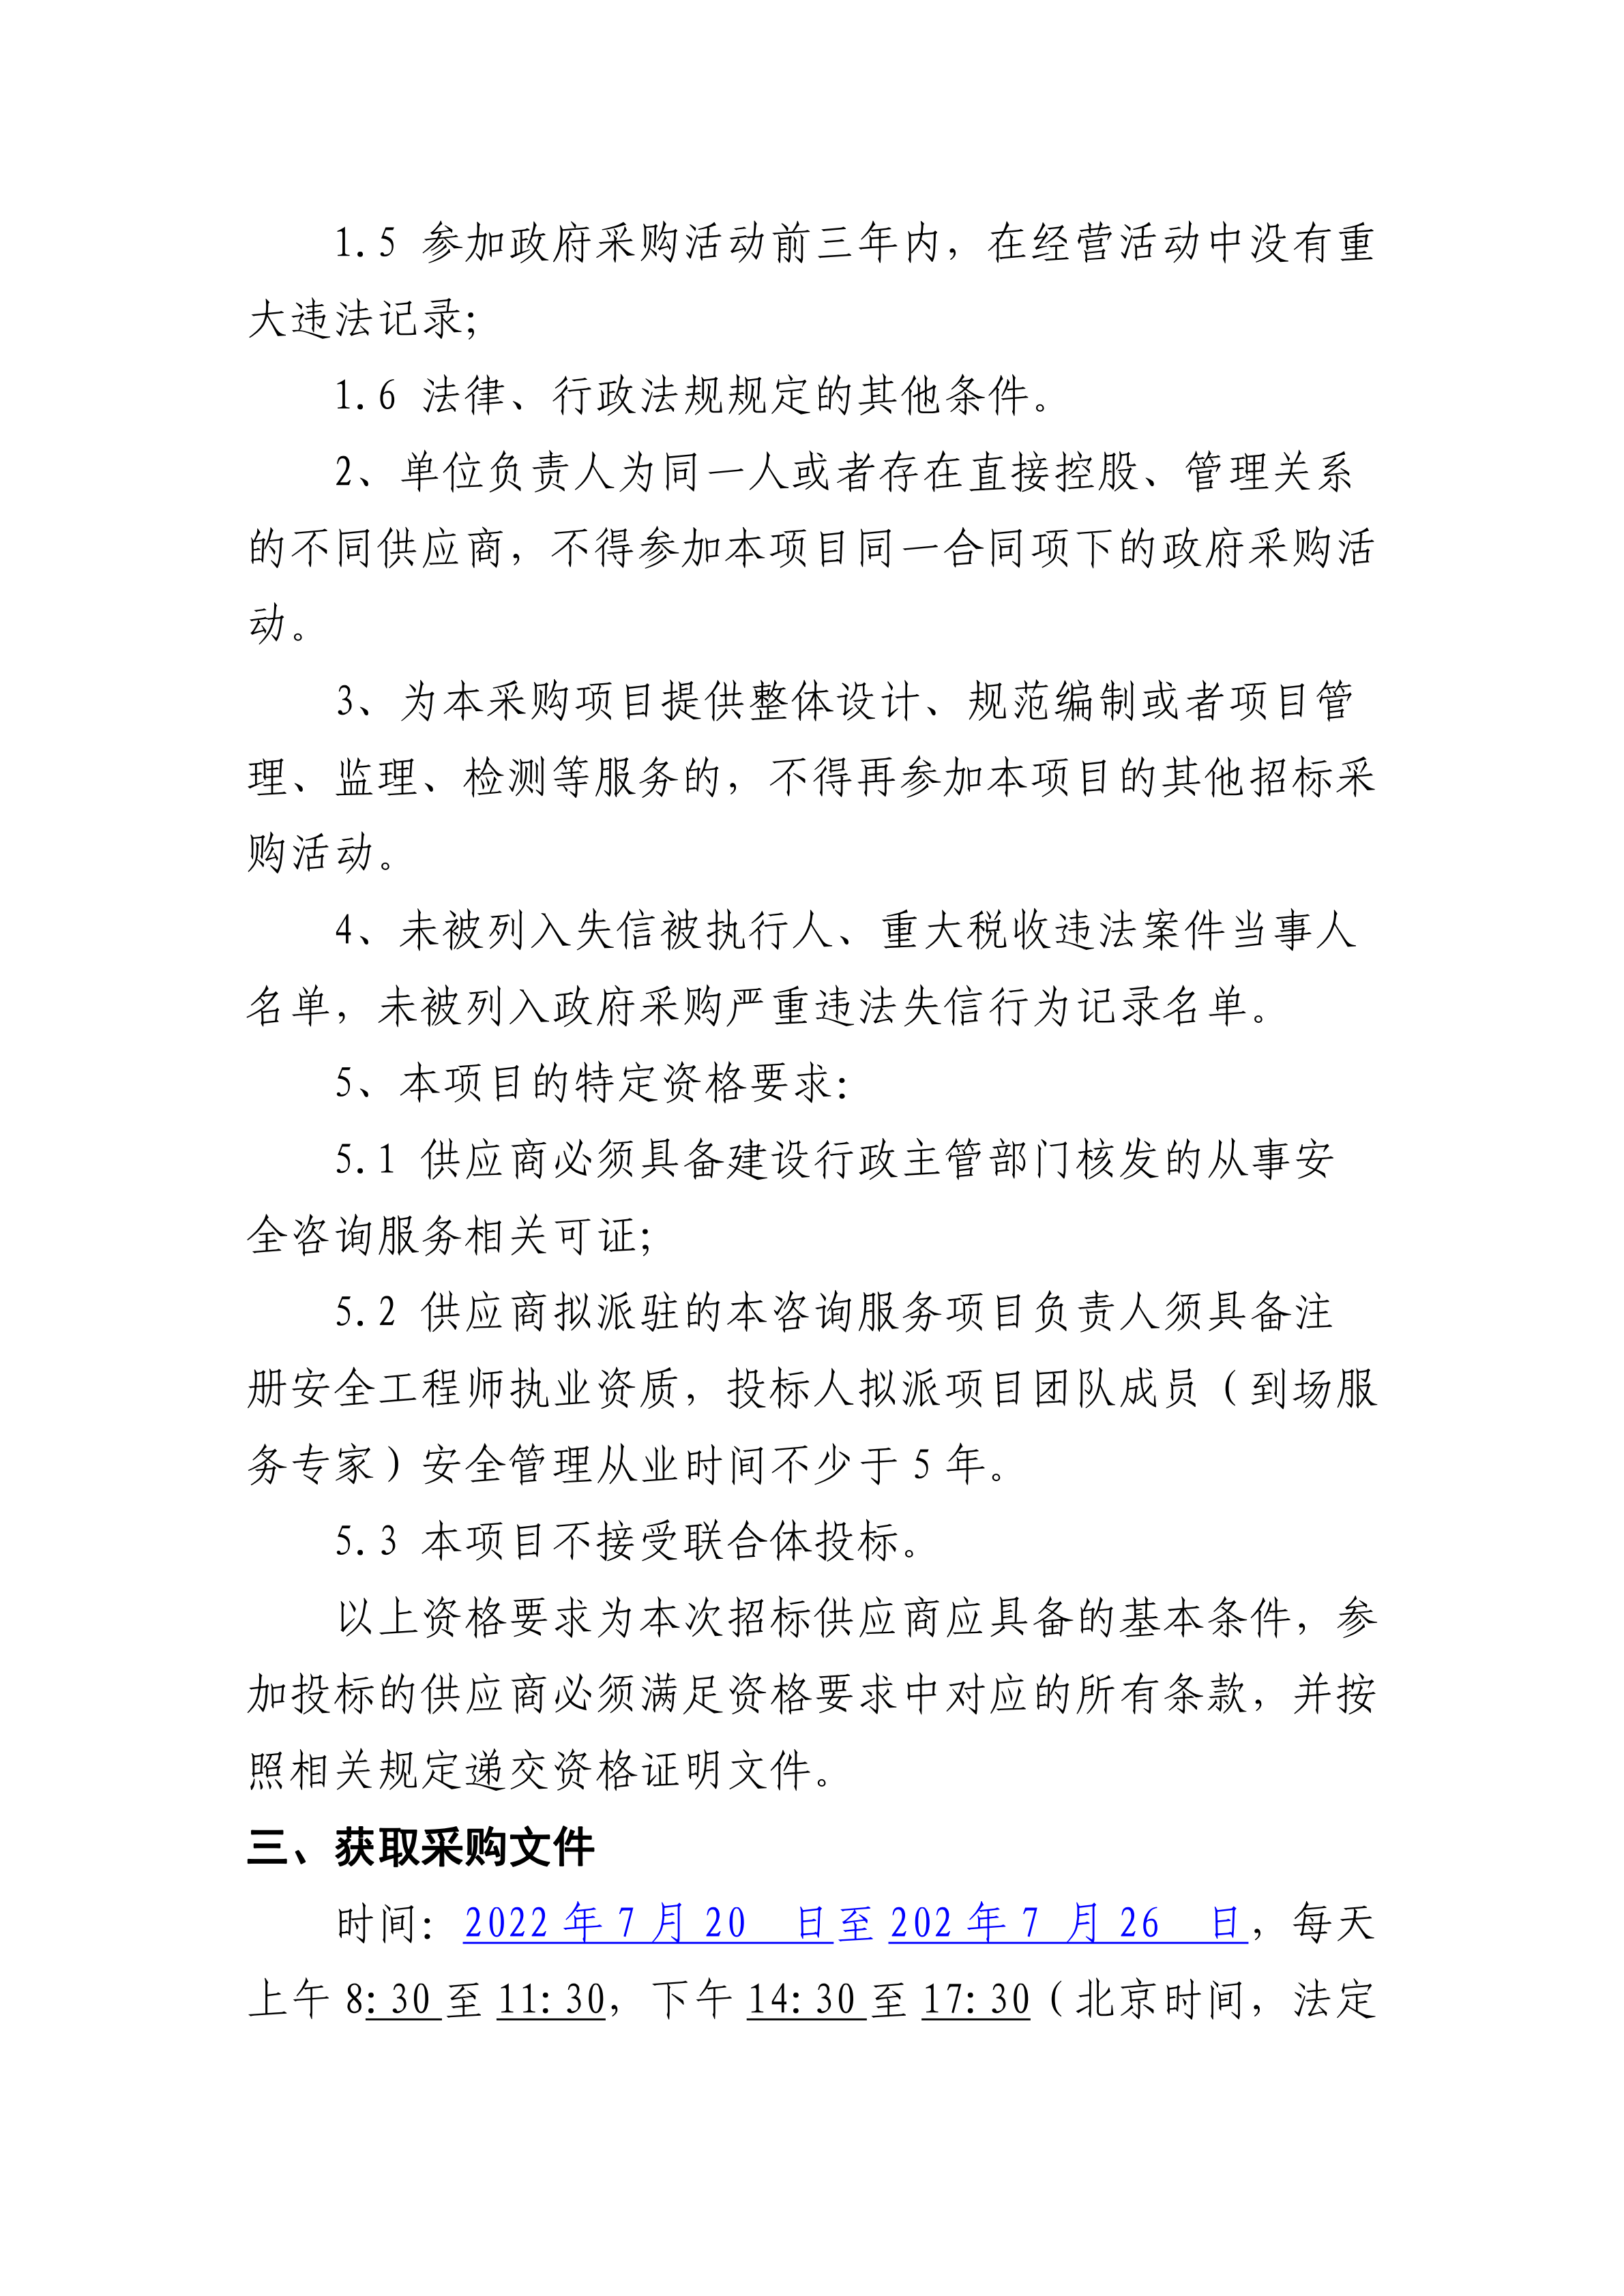 手机买球官网(中国)科技有限公司建设工程安全咨询服务项目竞争性谈判公告(0719)_01.png